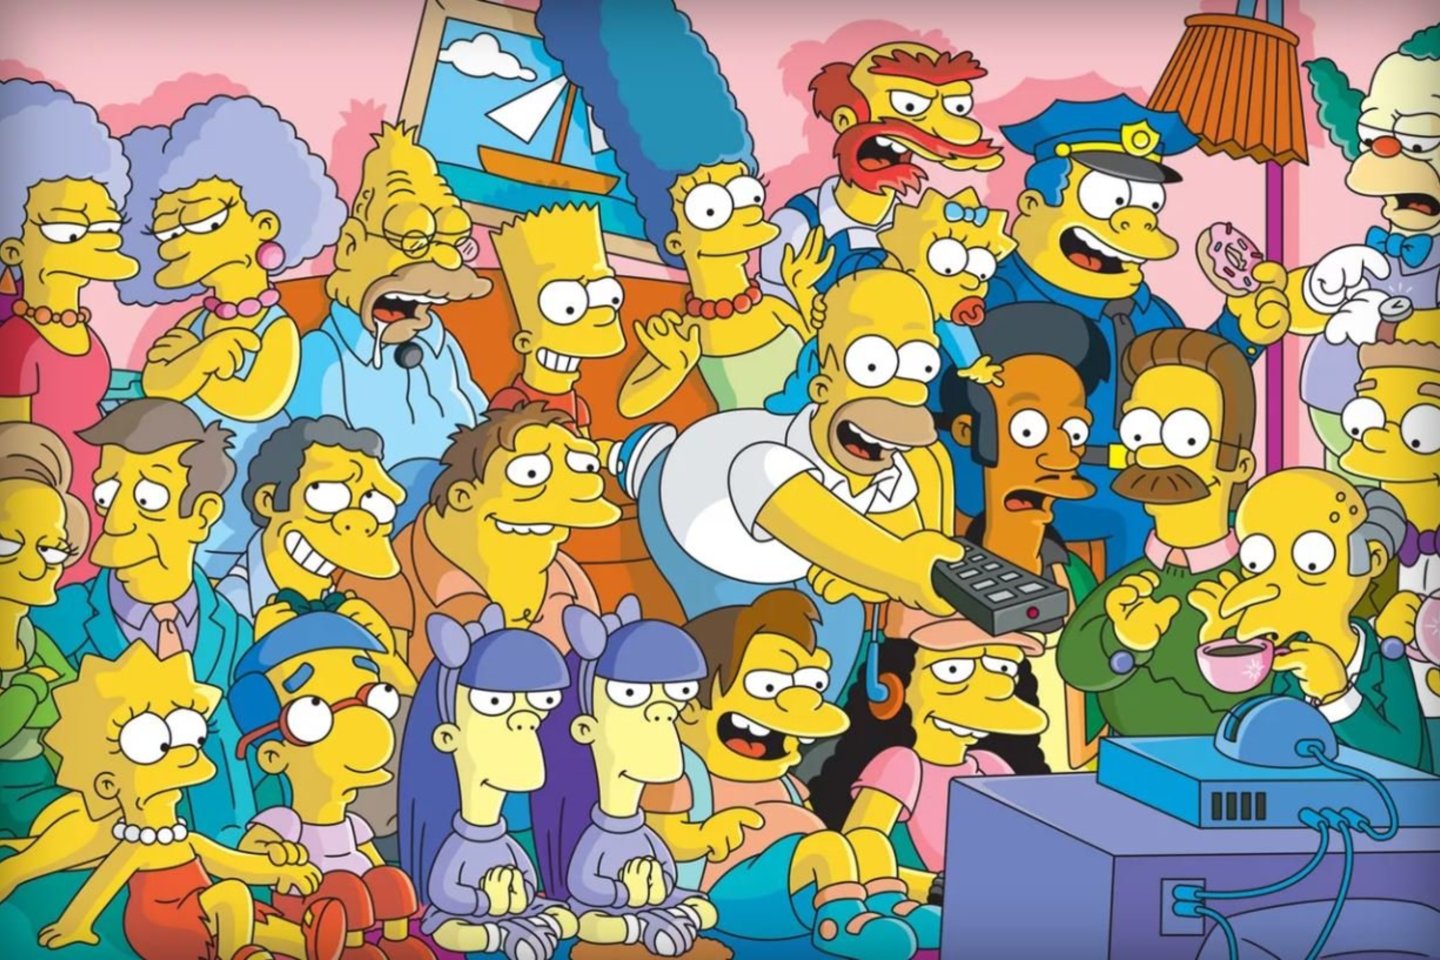 1989 m. per FOX televiziją parodytas pirmasis animacinio serialo „Simpsonai“ epizodas. Tai vienas populiariausių visų laikų animacinių serialų, kuriame parodijuojama Amerikos vidurinė klasė.